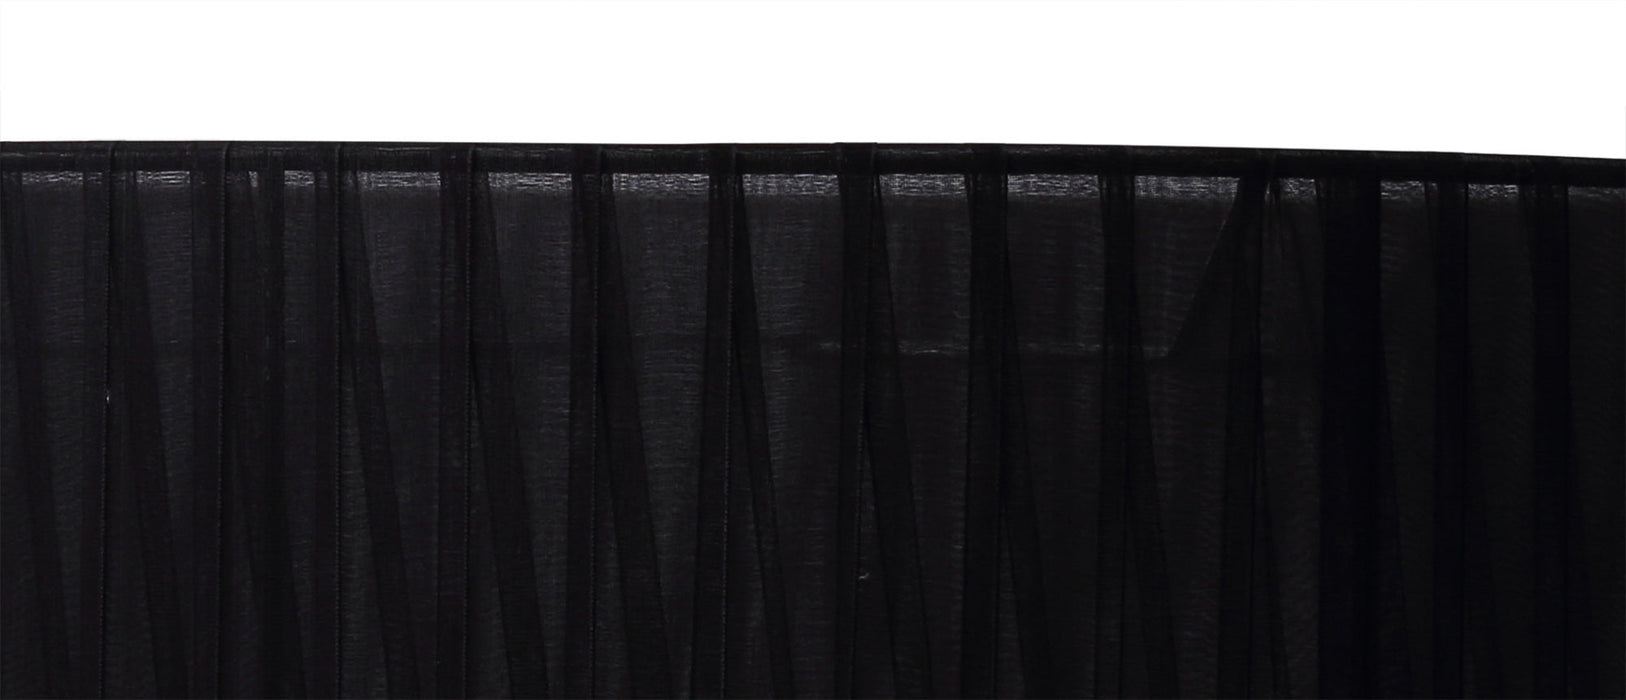 Deco Serena Round Cylinder, 450 x 150mm Organza Shade, Black • D0608